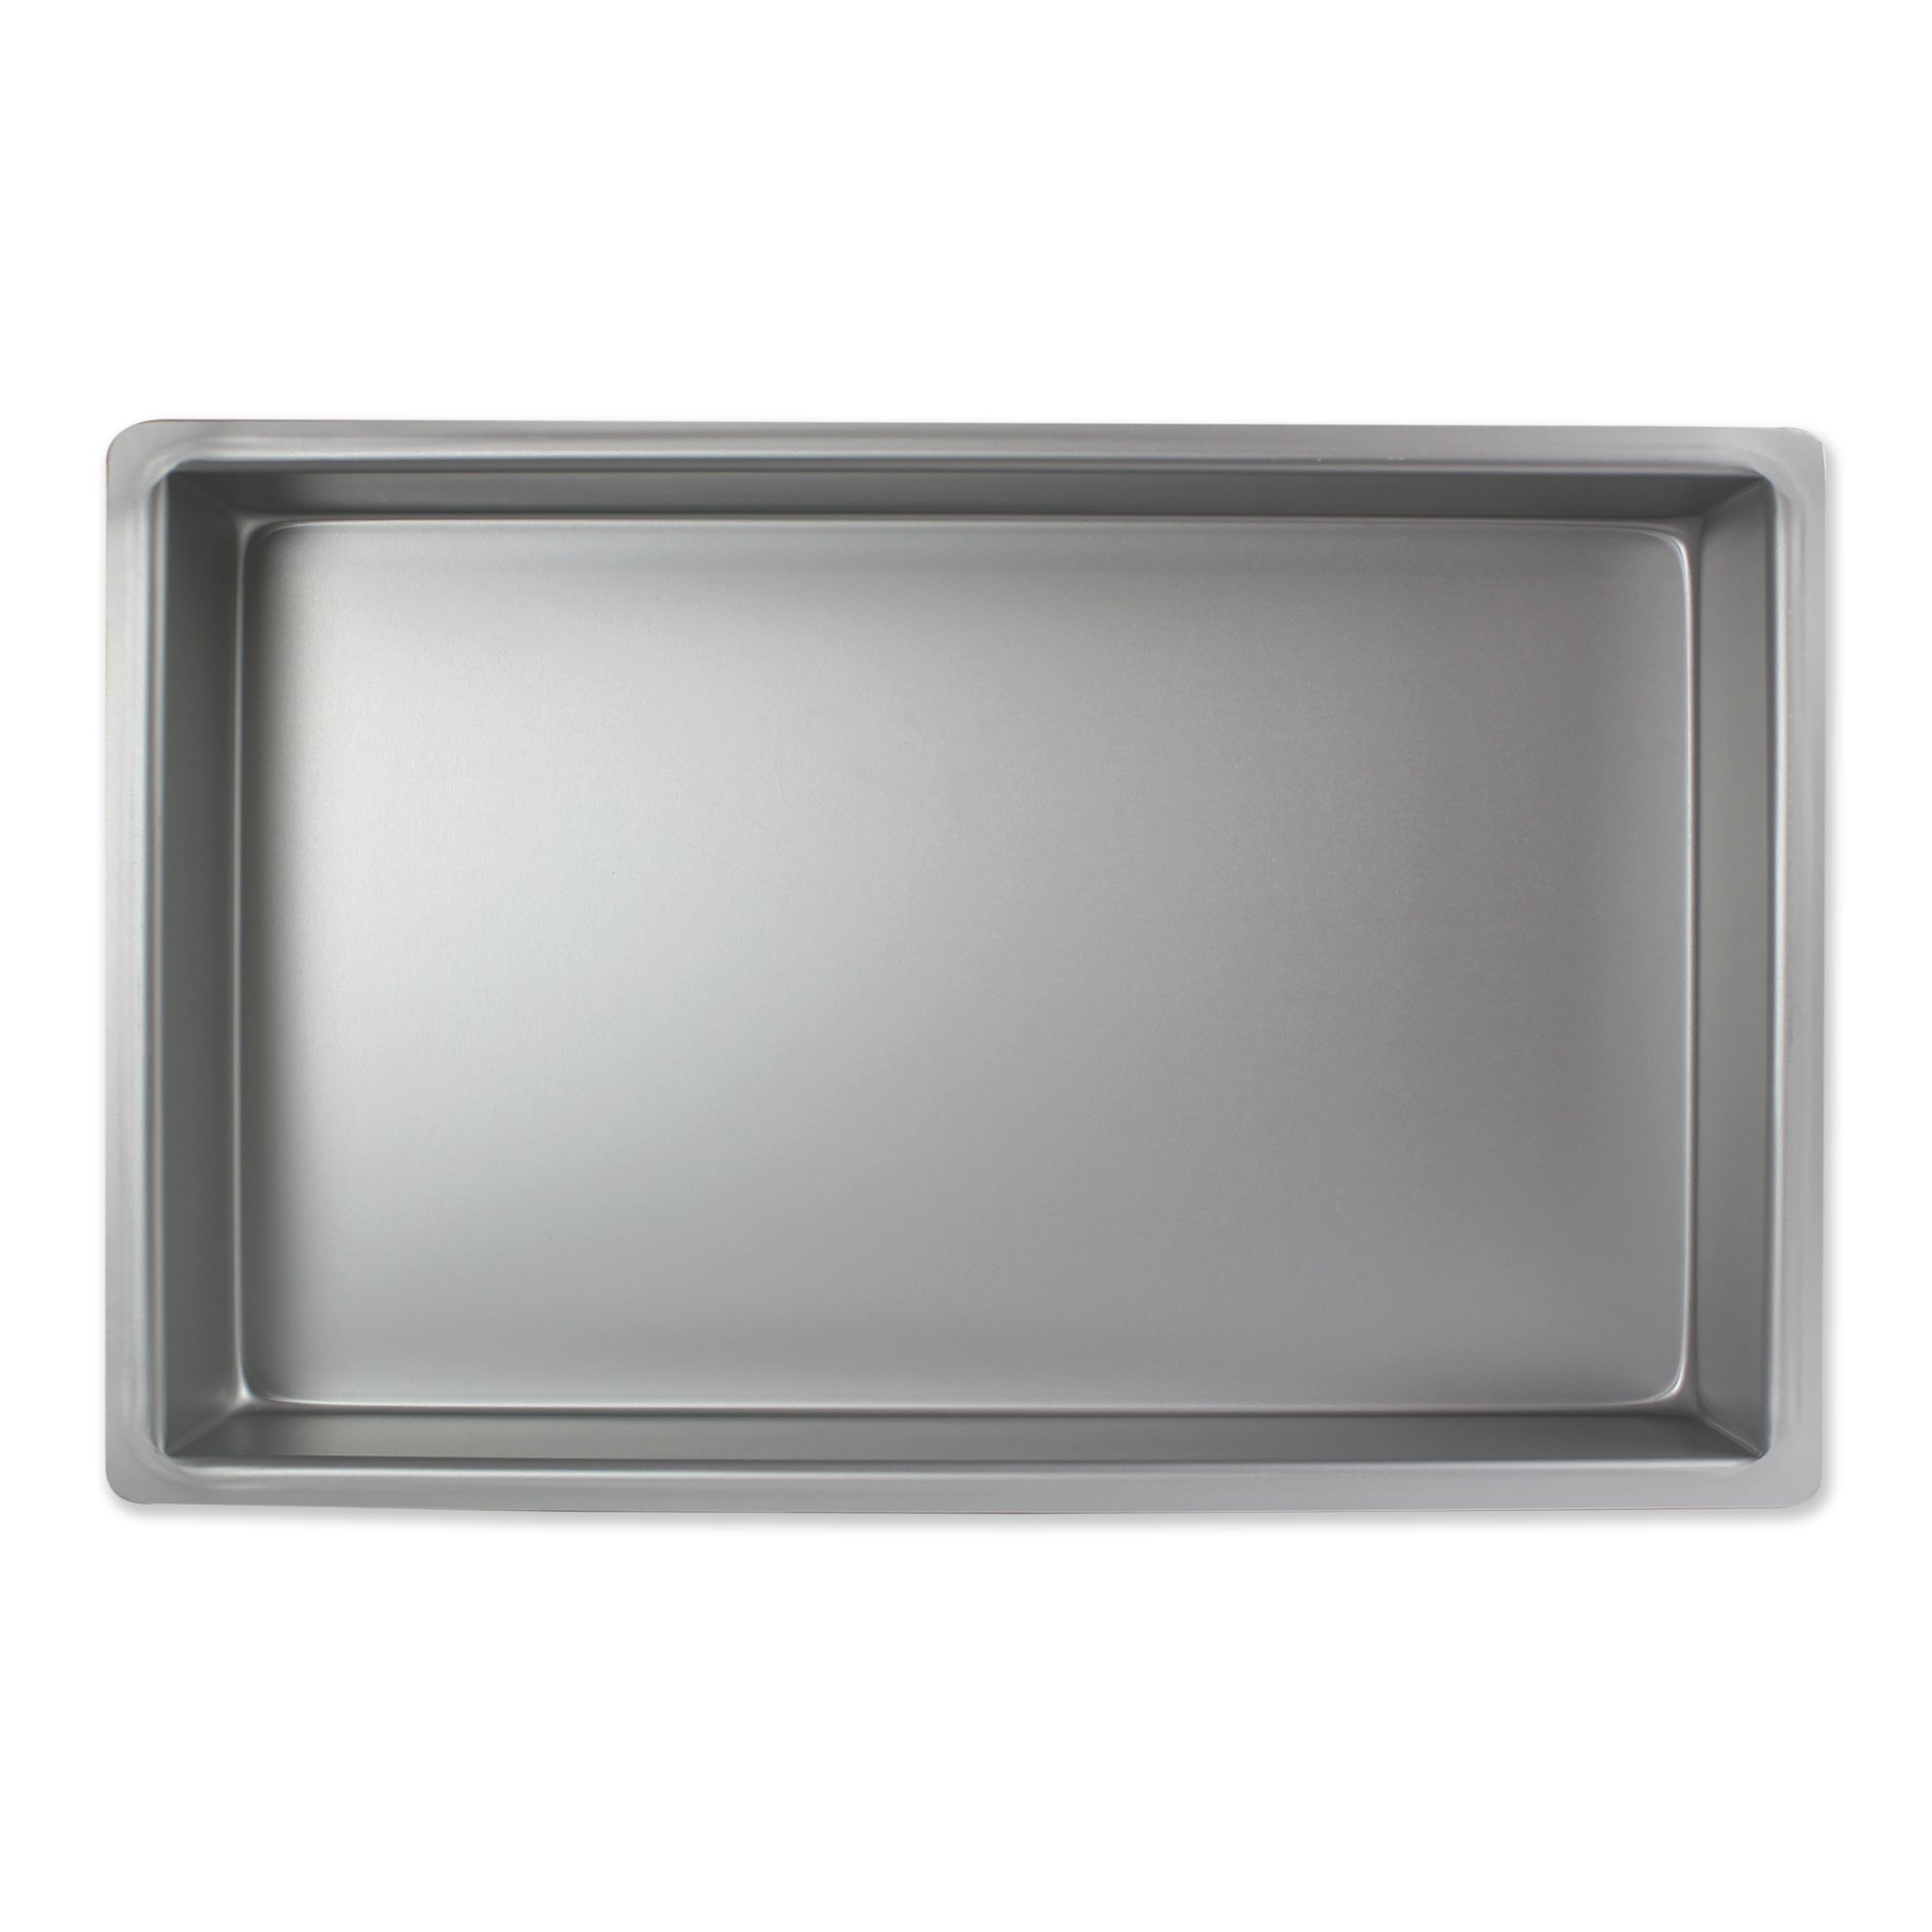 PME OBL07113 Längliche Aluminium-Backform, Silver, 17,8 x 27,9 x 7,6 cm